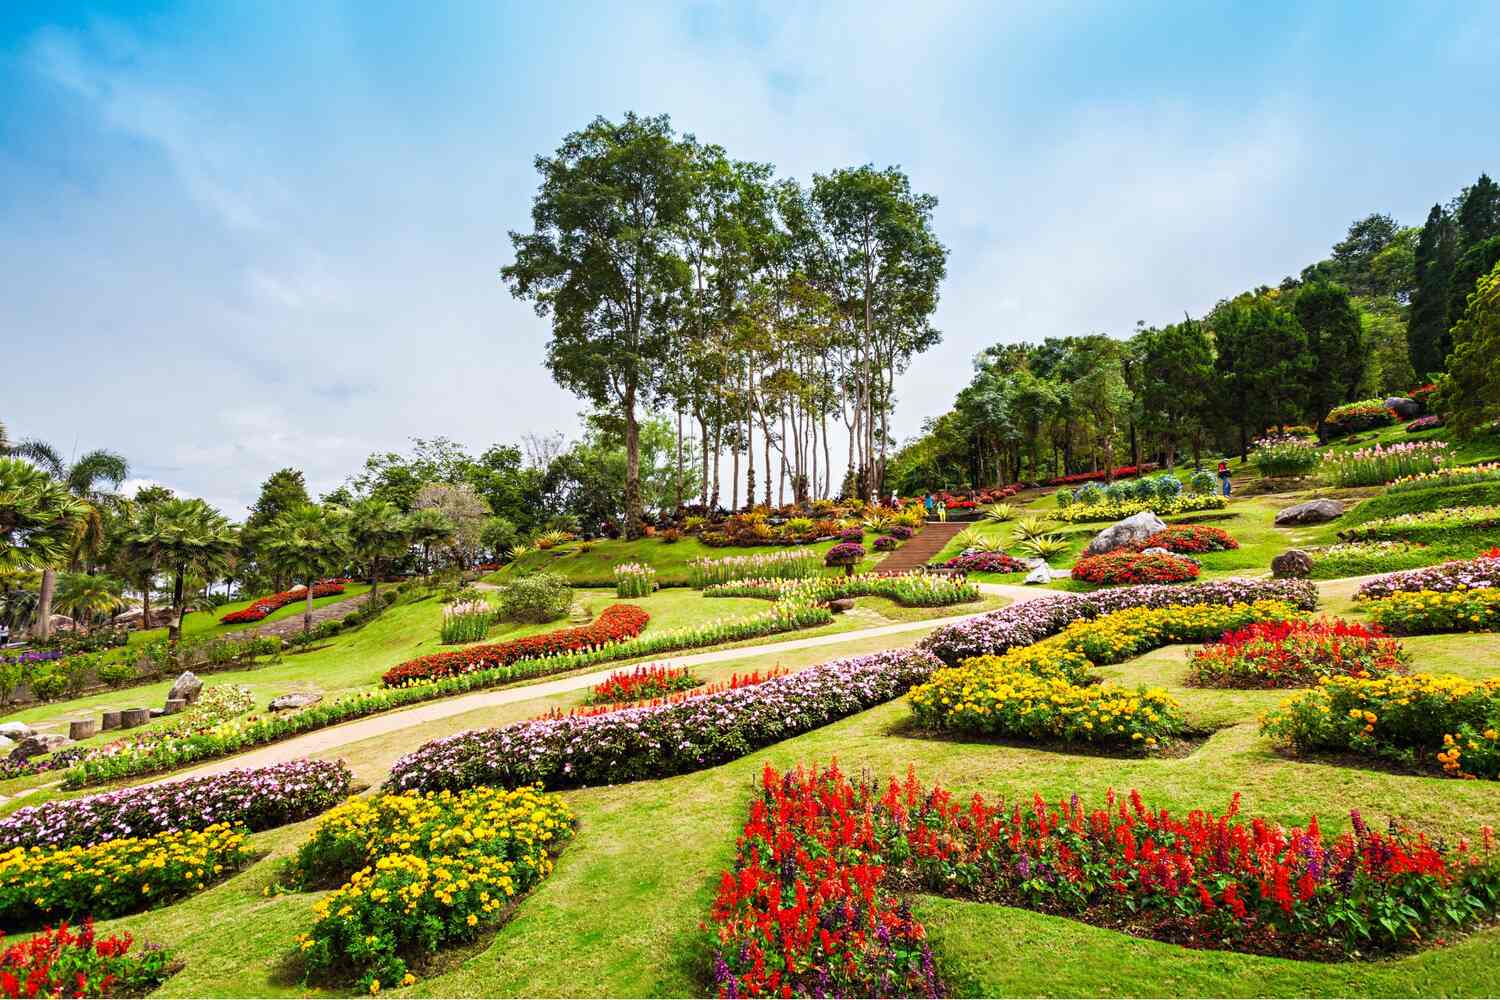 Gardens at the Doi Tung Royal Villa in Chiang Rai